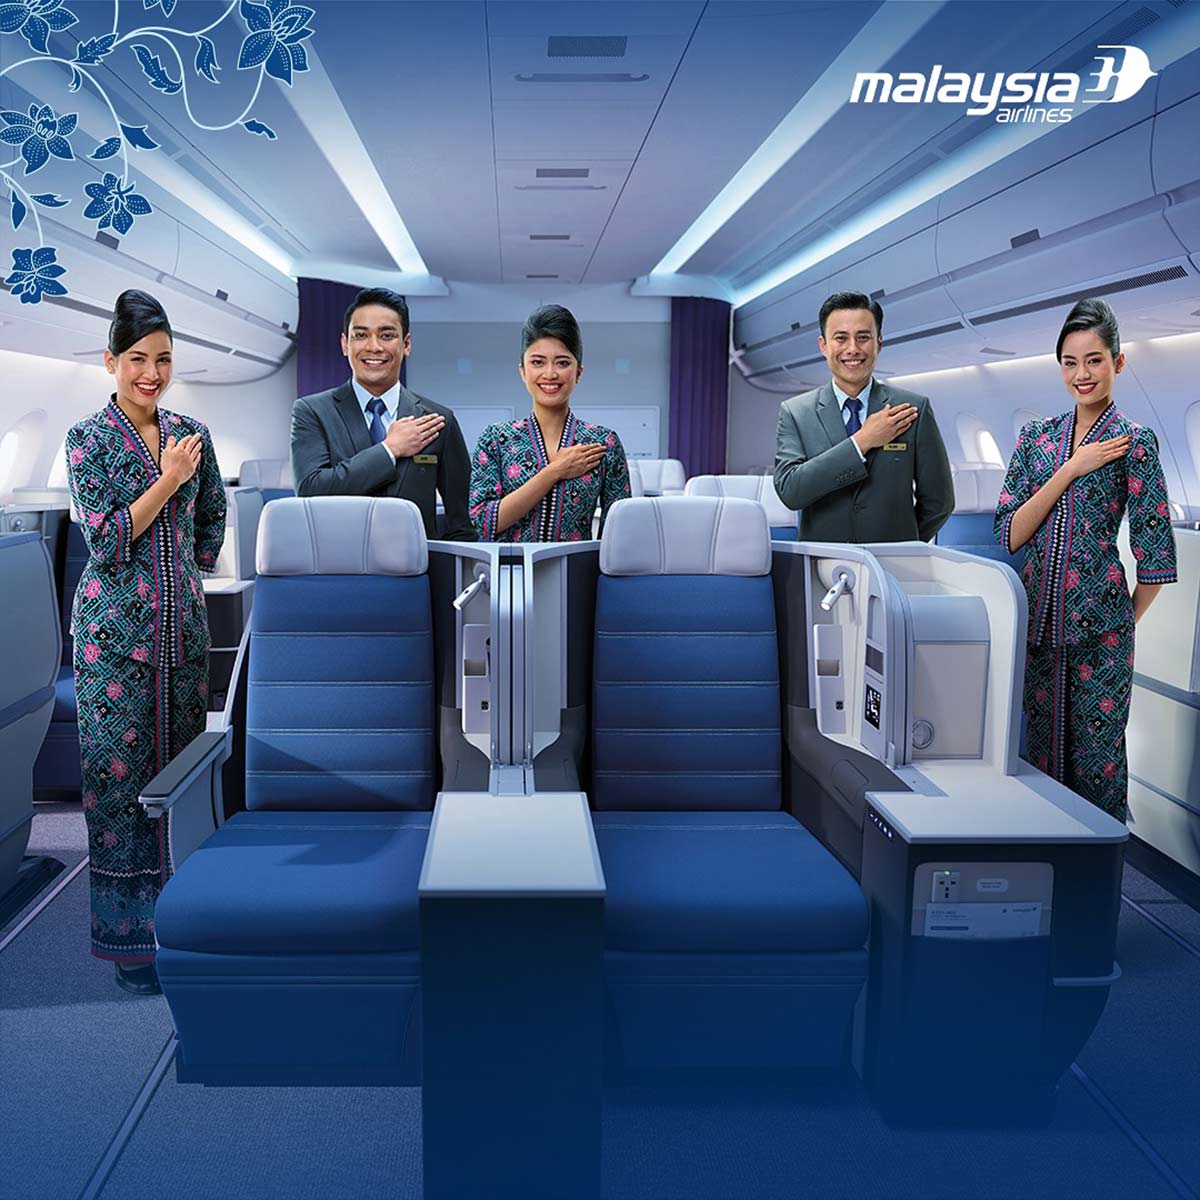 บินชั้นธุรกิจไปกับ Malaysia Airlines ในราคาเริ่มต้นเพียง 18,200 บาท (ไป-กลับ รวมทุกอย่างแล้ว)